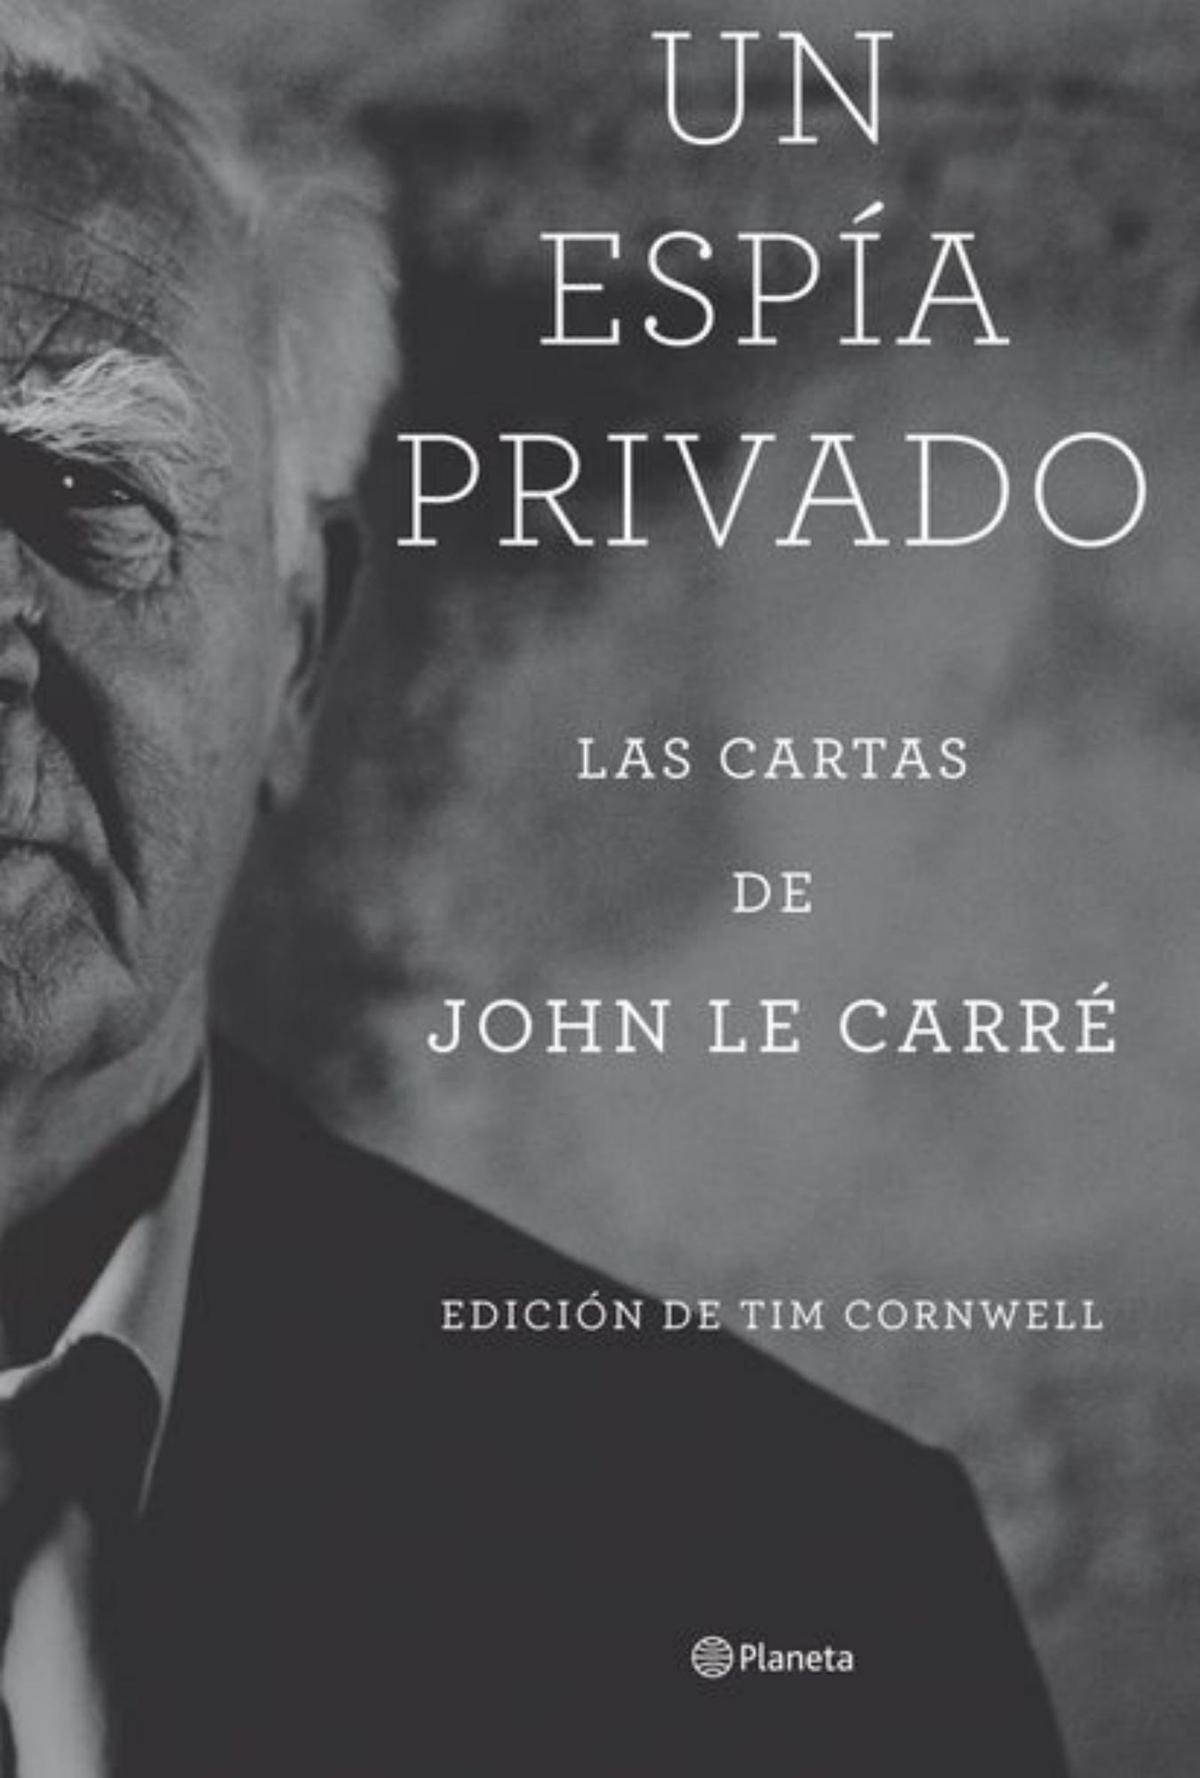 Un espía privado, de John le Carré.